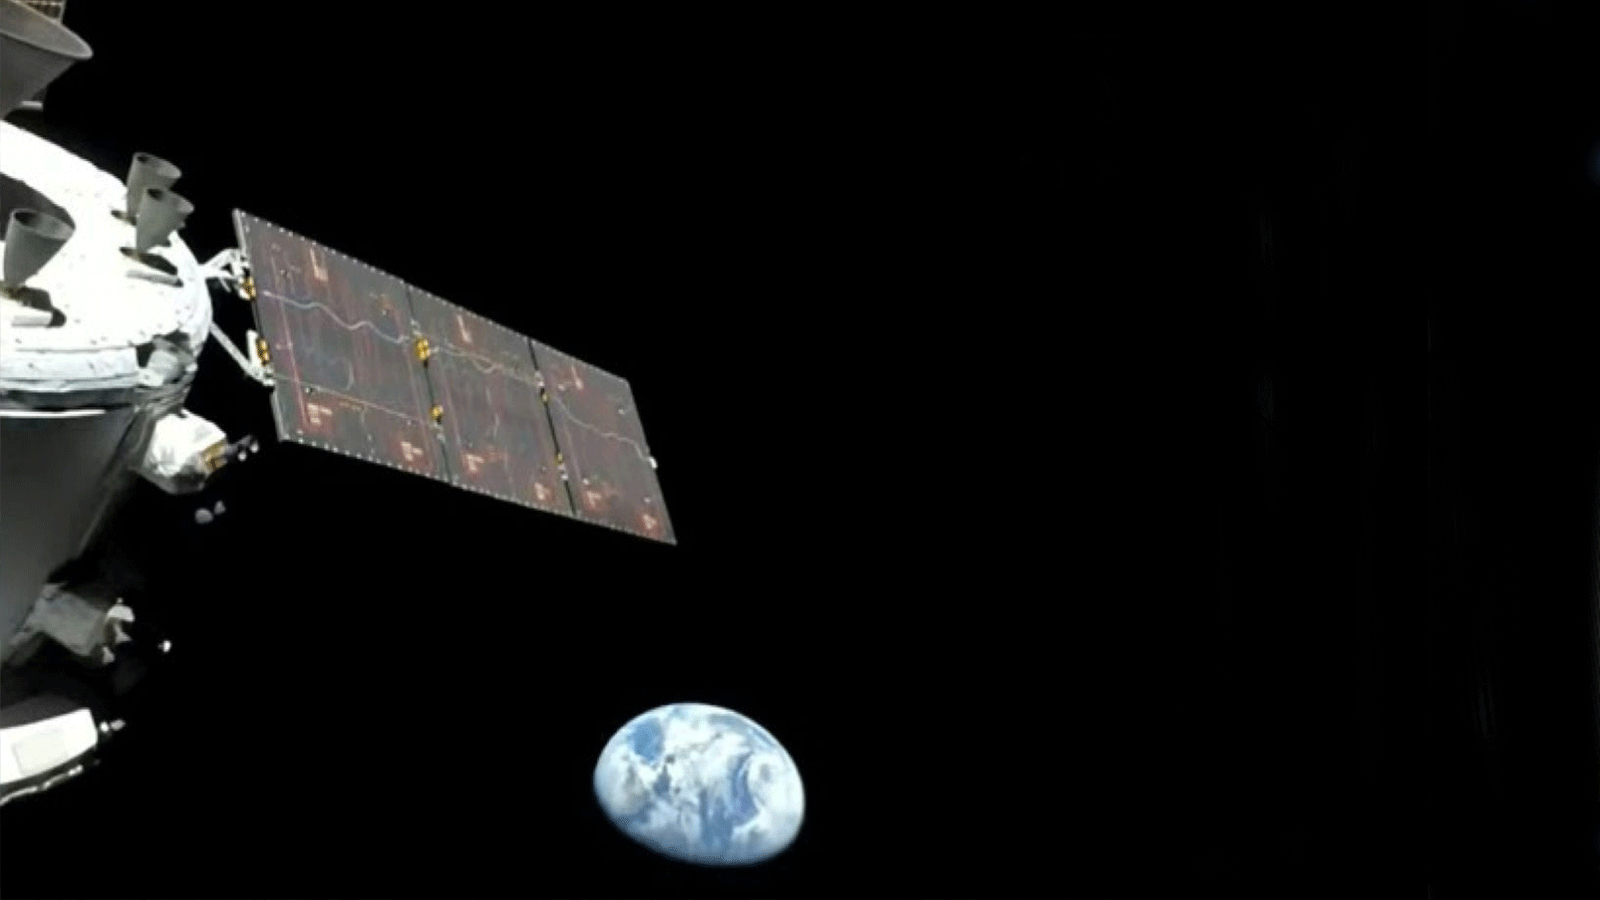  وكالة ناسا ترحب بأداء مركبة أوريون الفضائية وهي في طريقها إلى القمر بعد إقلاعها من فلوريدا، وتقول لقد 